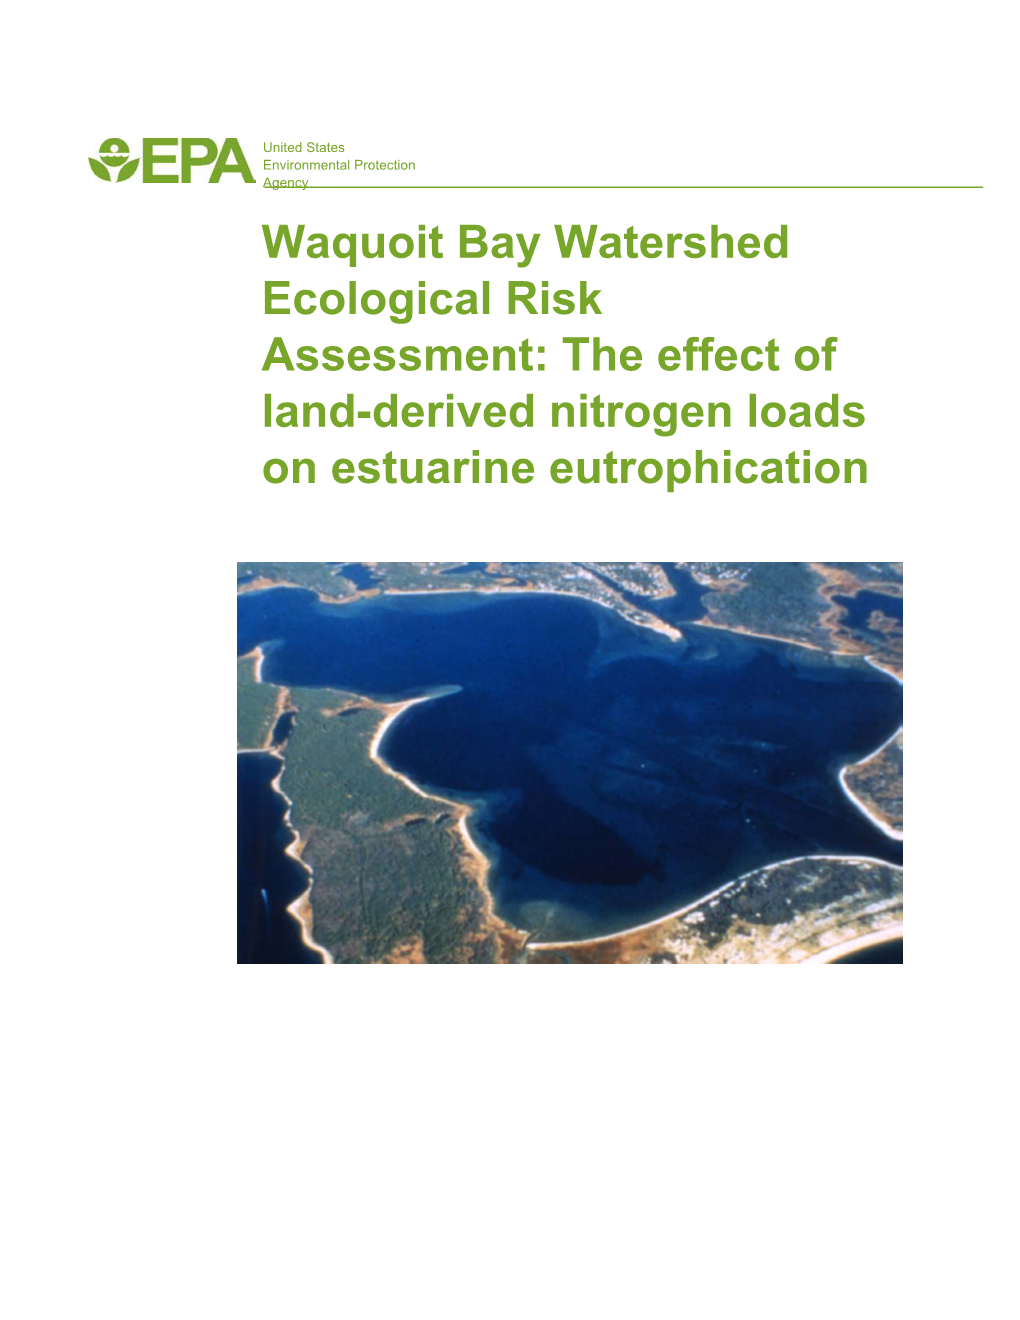 Waquoit Bay Watershed Ecological Risk Assessment: the Effect of Land-Derived Nitrogen Loads on Estuarine Eutrophication EPA/600/R-02/079 October 2002